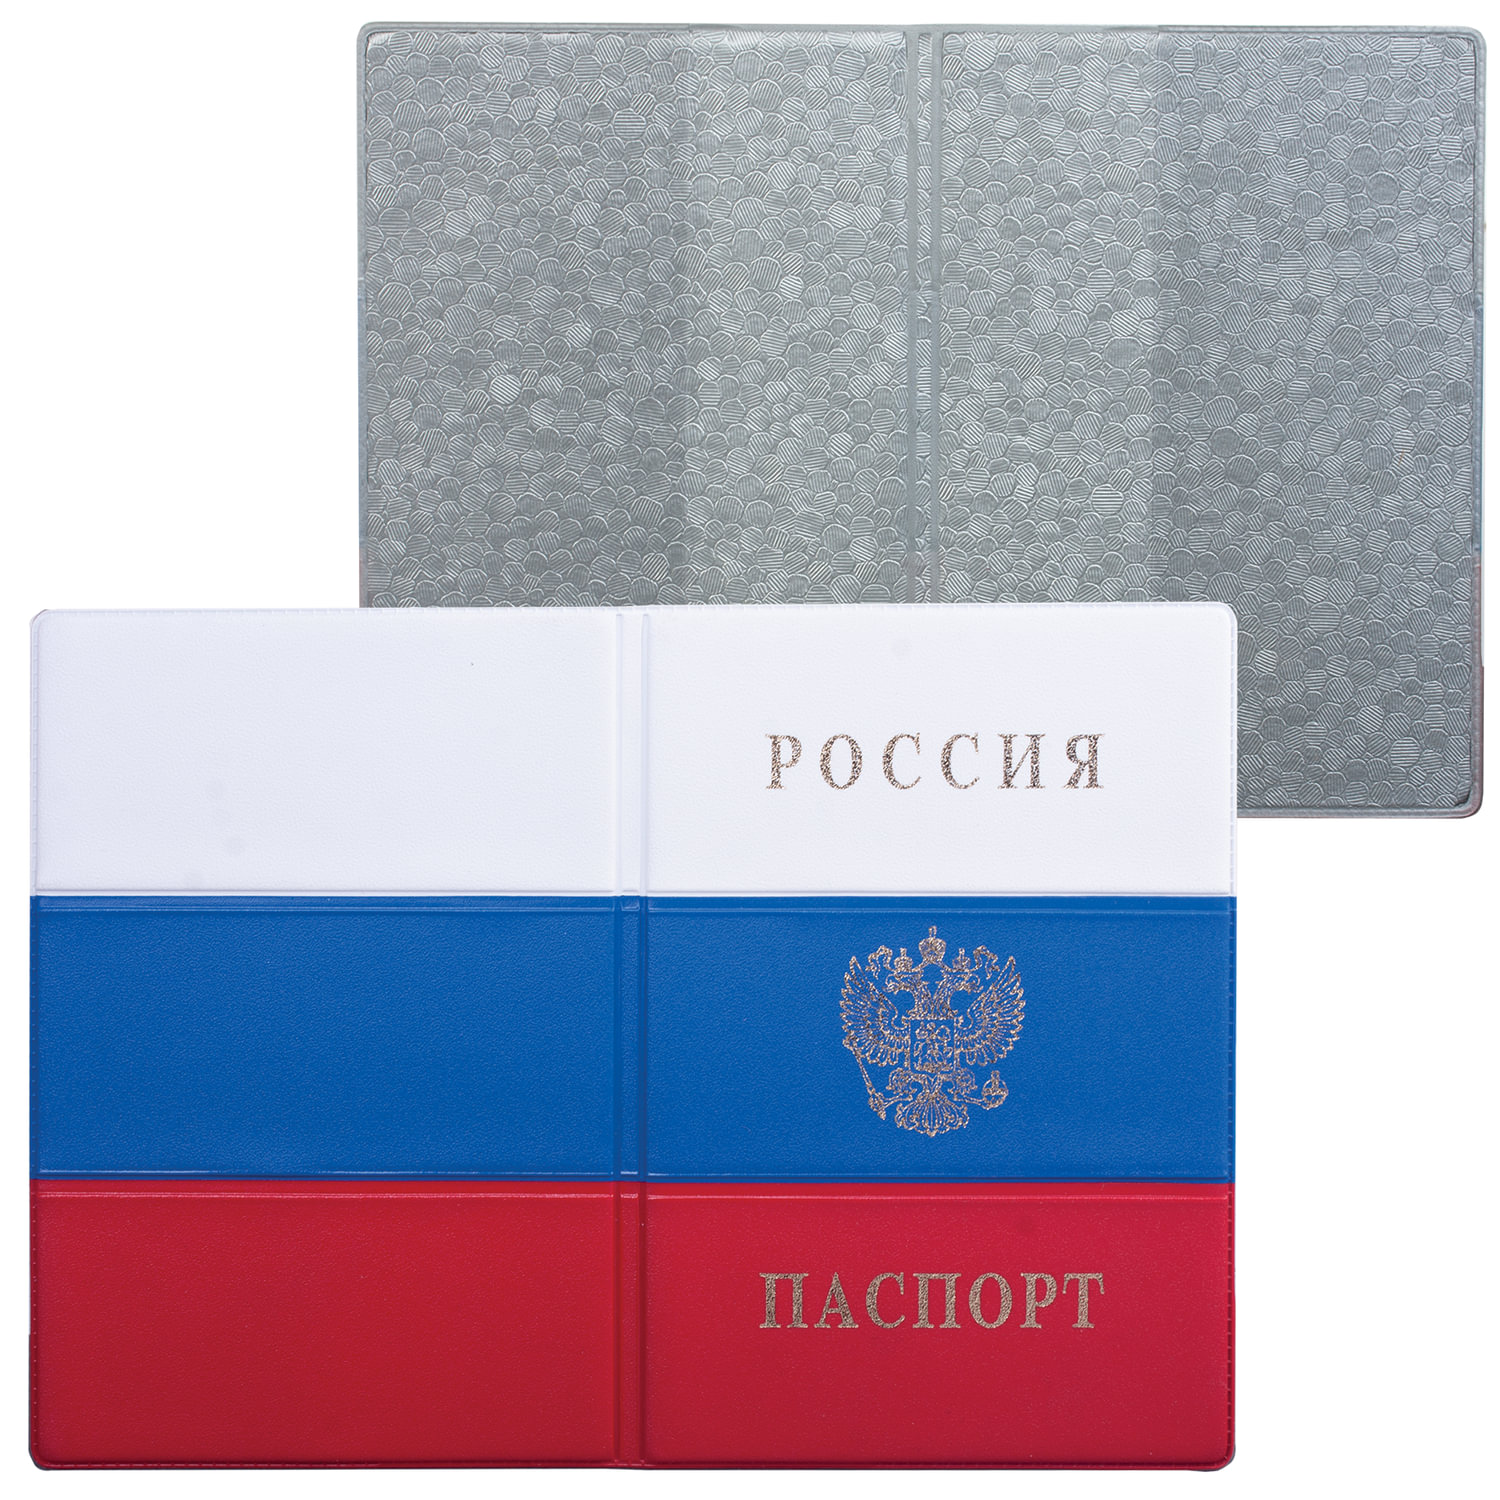 Обложка для паспорта с гербом Триколор, ПВХ, цвета российского триколора, ДПС, 2203.Ф, (20 шт.)